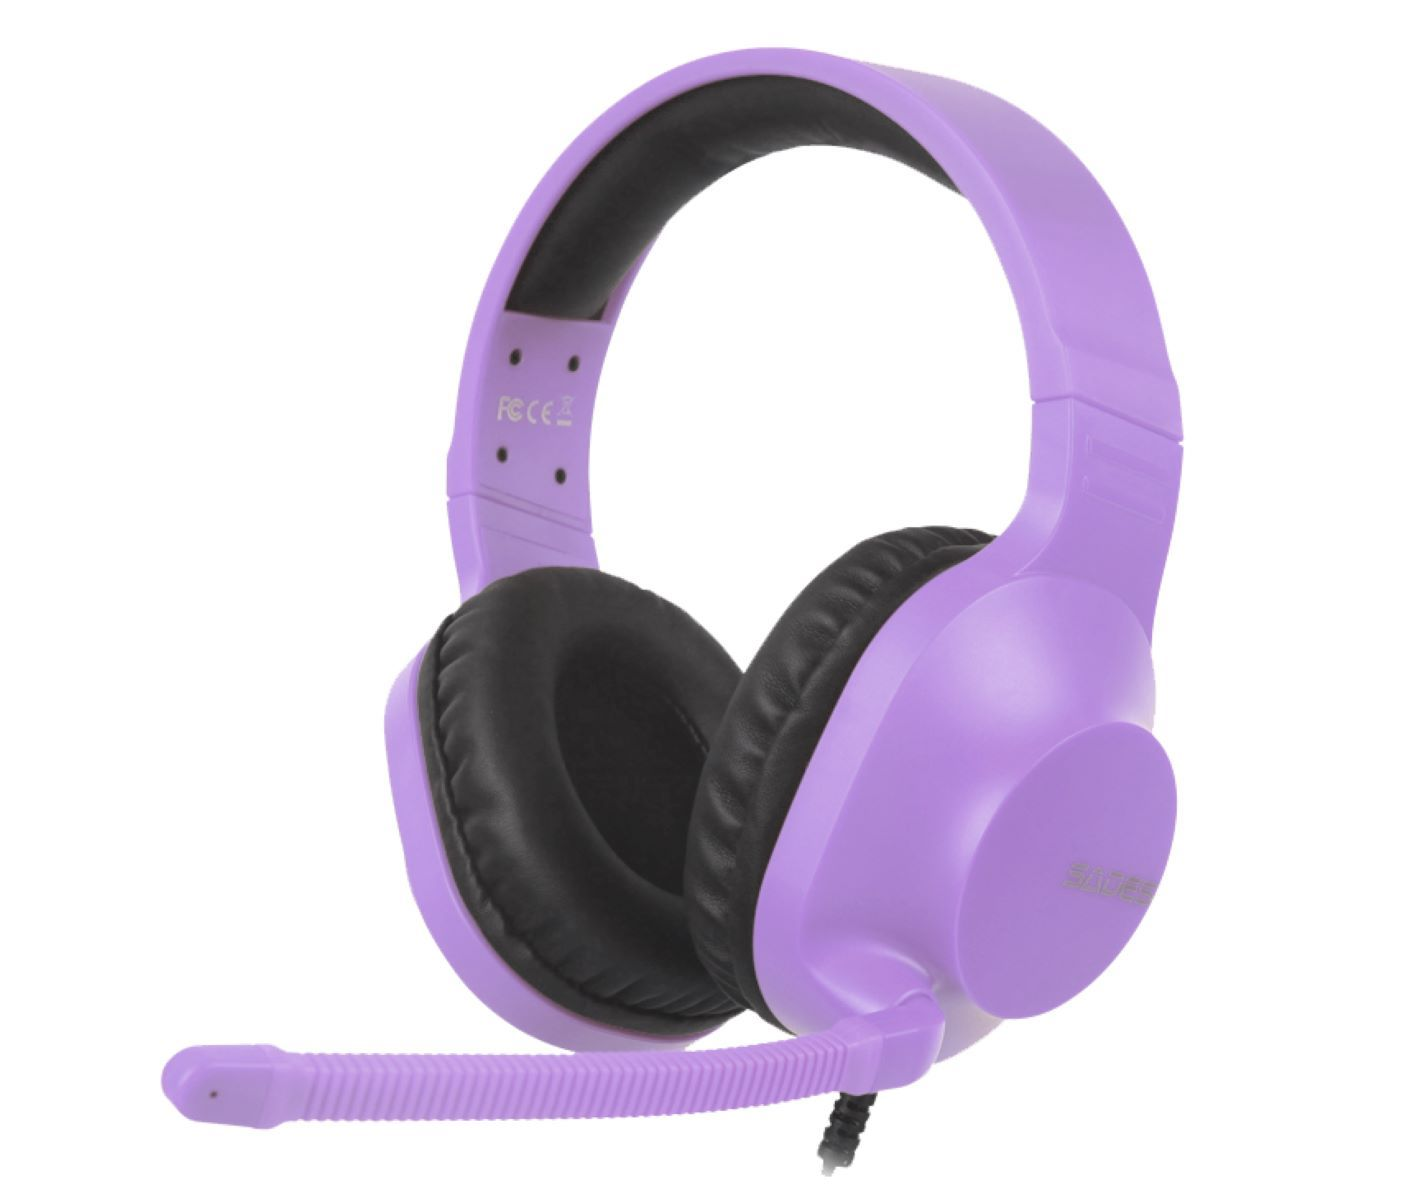 SADES Spirits SA-721, purple Over-ear Gaming-Headset